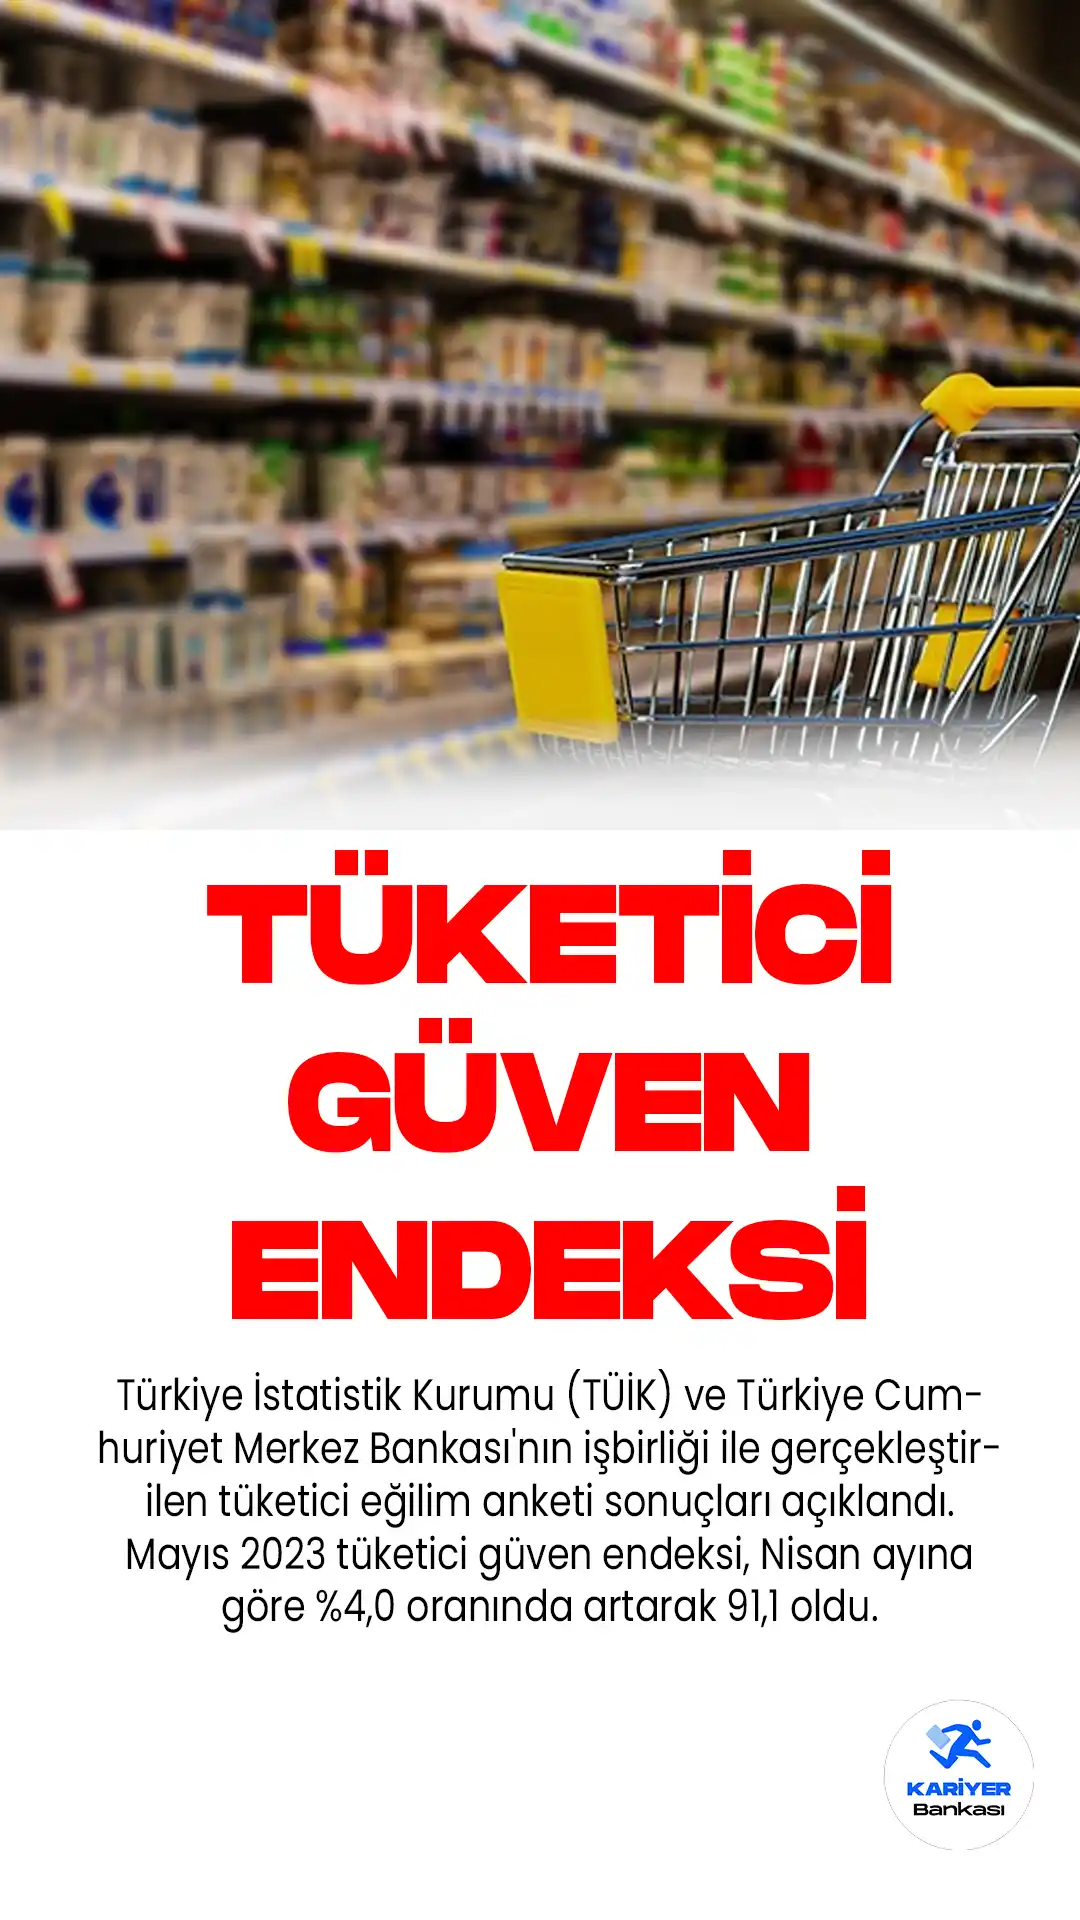 Türkiye İstatistik Kurumu (TÜİK) ve Türkiye Cumhuriyet Merkez Bankası'nın işbirliği ile gerçekleştirilen tüketici eğilim anketi sonuçları açıklandı.